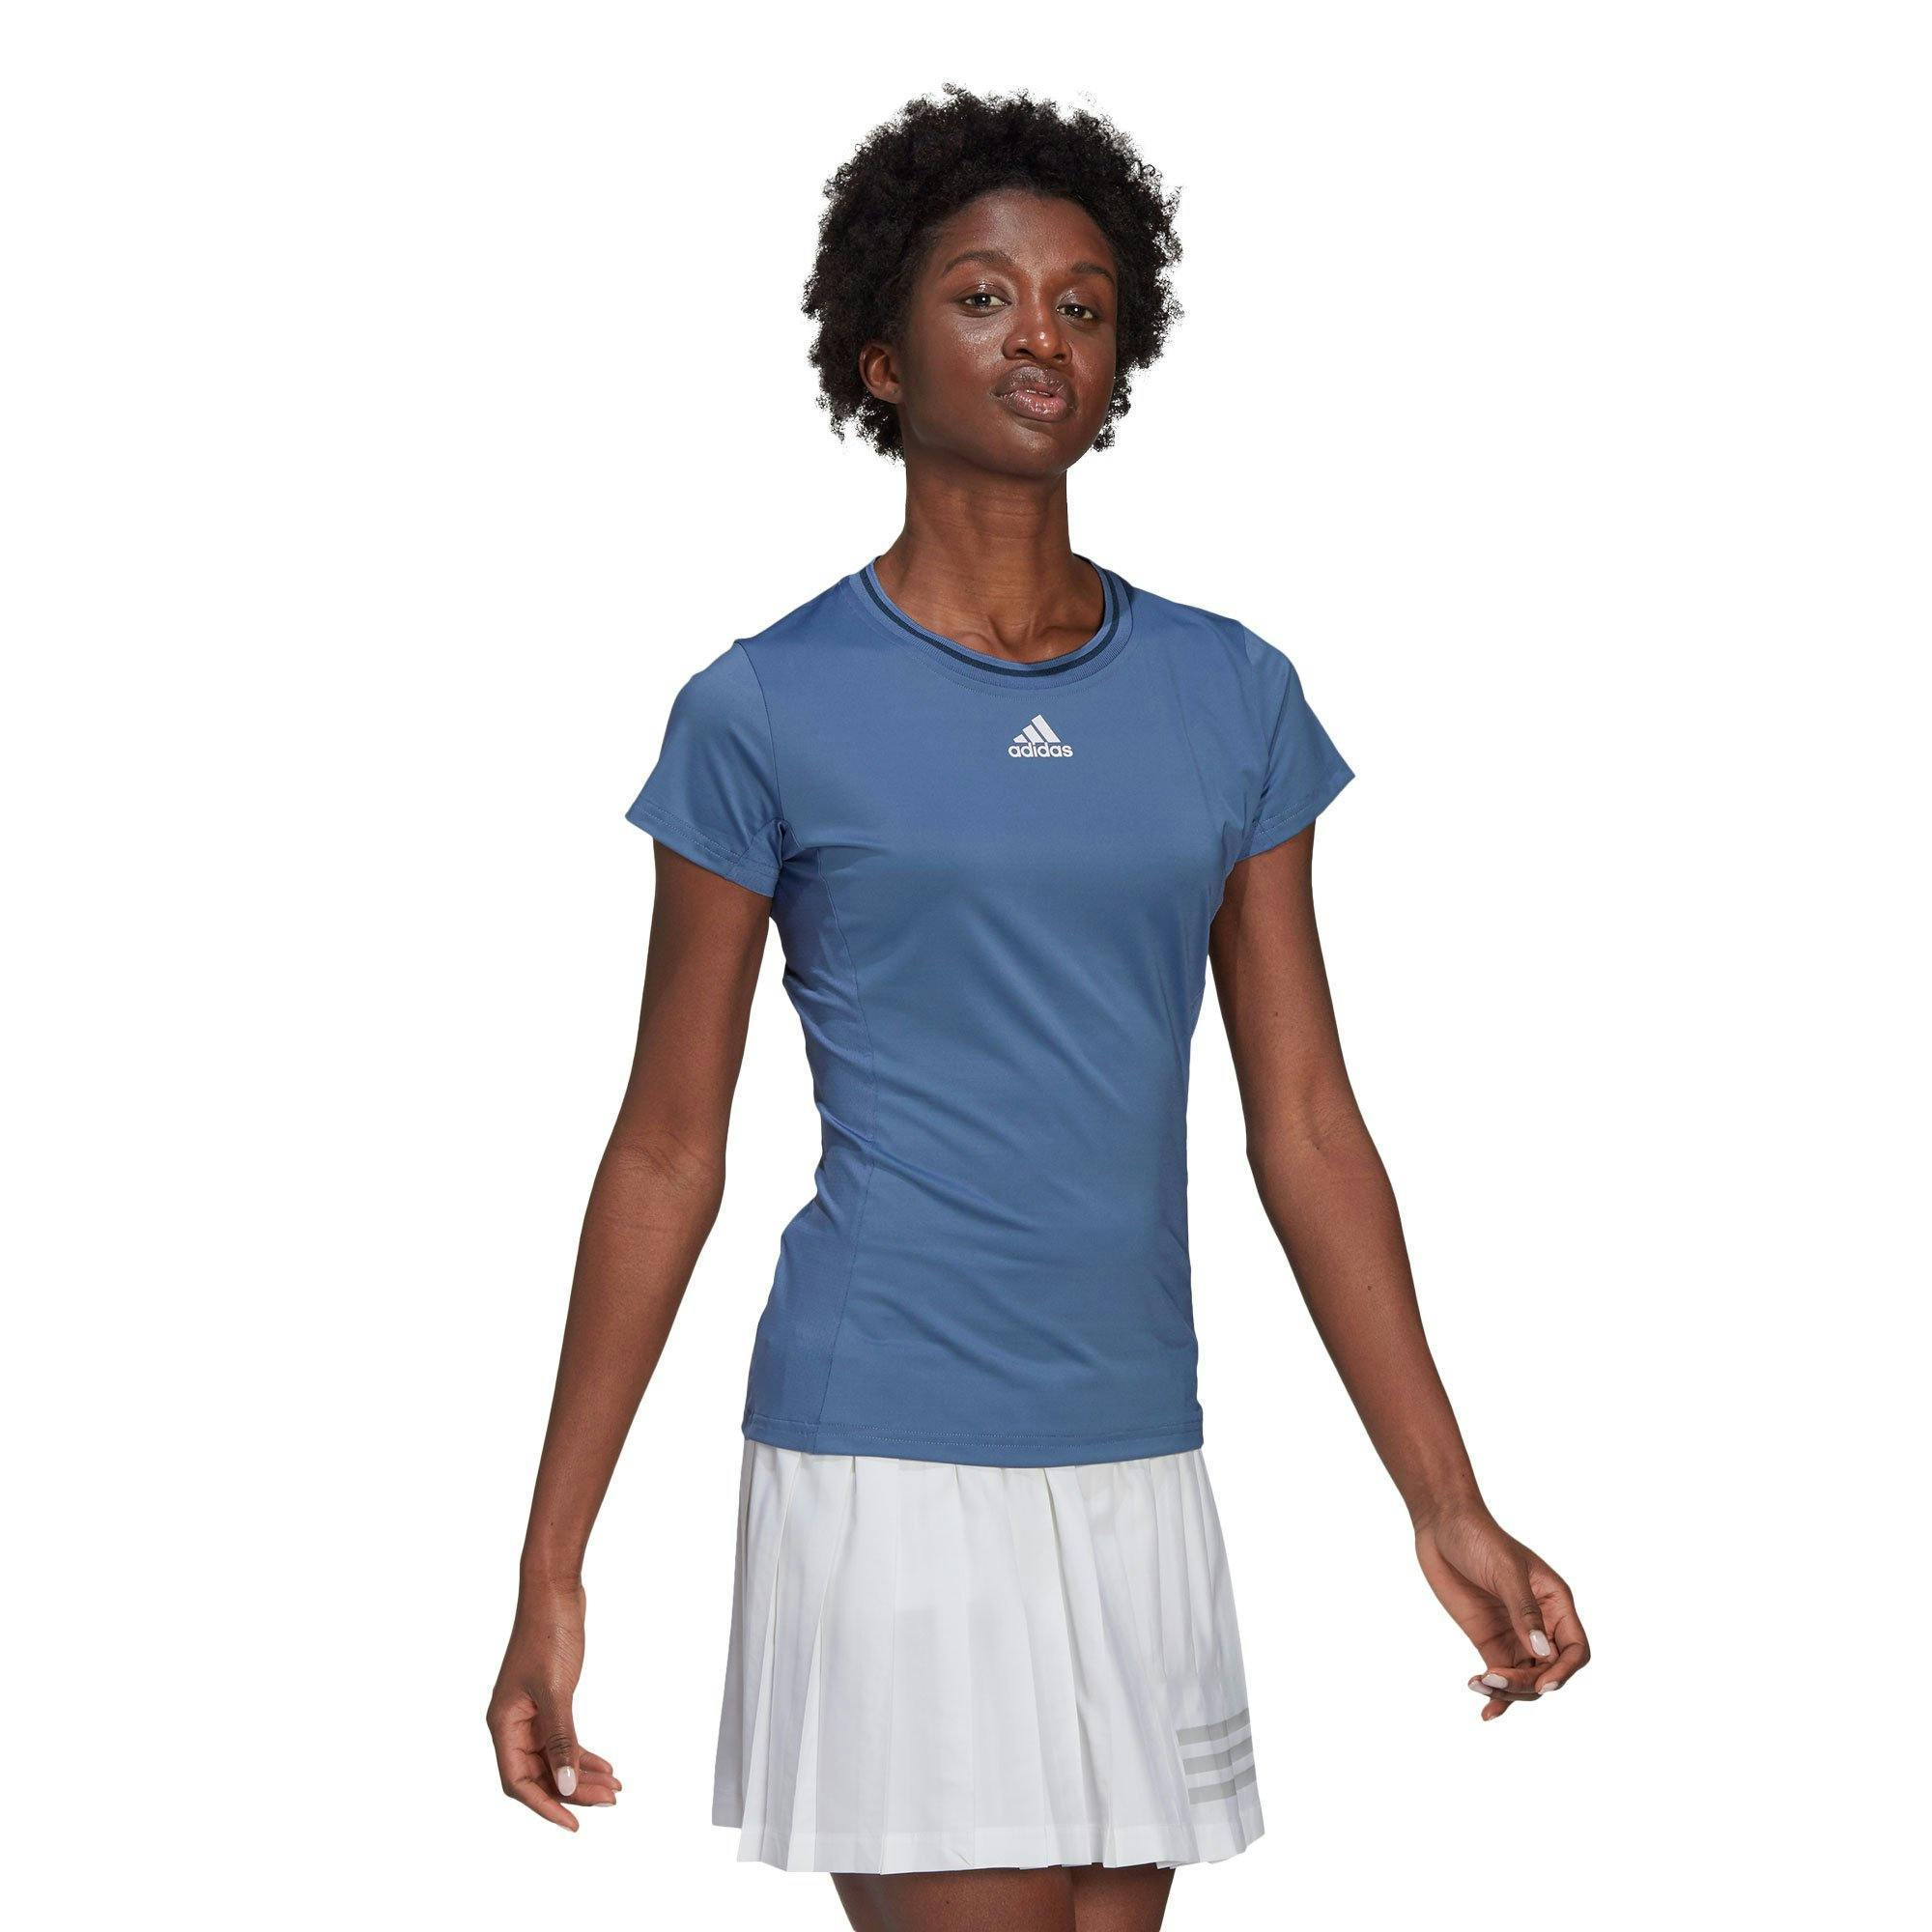 Adidas Women's Freelift Match Blue Tennis Shirt